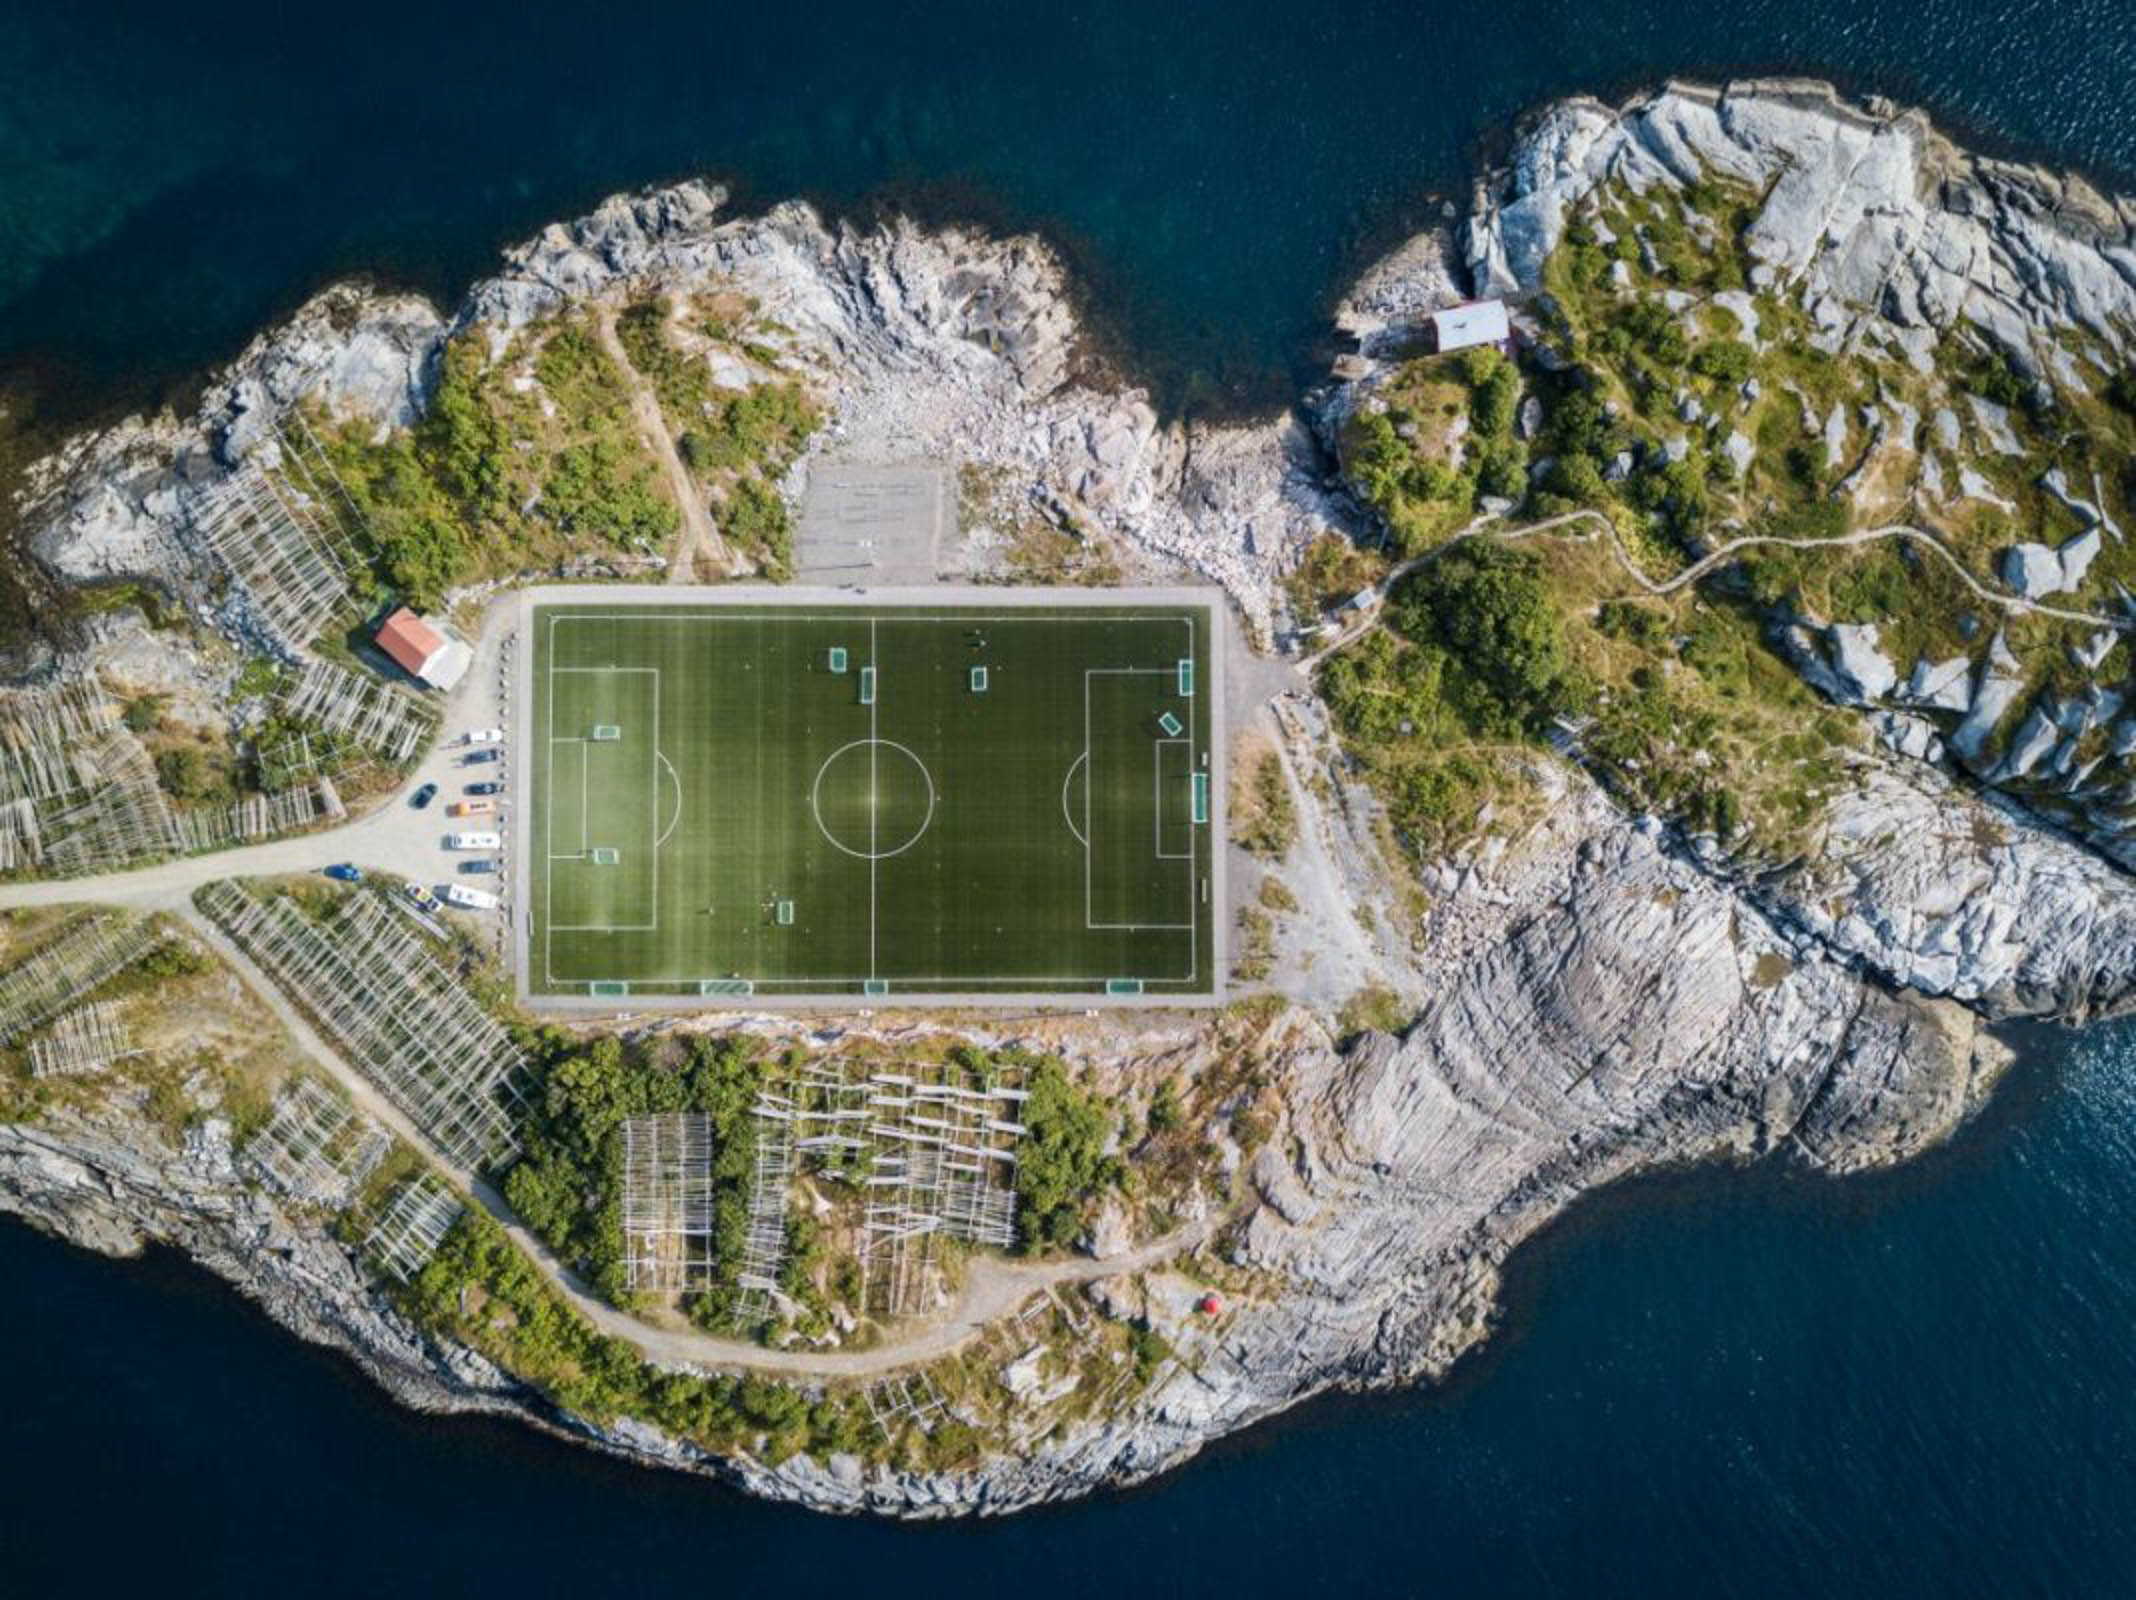 Стадион на острове. Футбольное поле в Хеннингсвер. Стадион Хеннингсвер, Норвегия. Хеннингсвер Норвегия футбольное поле. Стадион на острове Хеннингсвер, Норвегия.